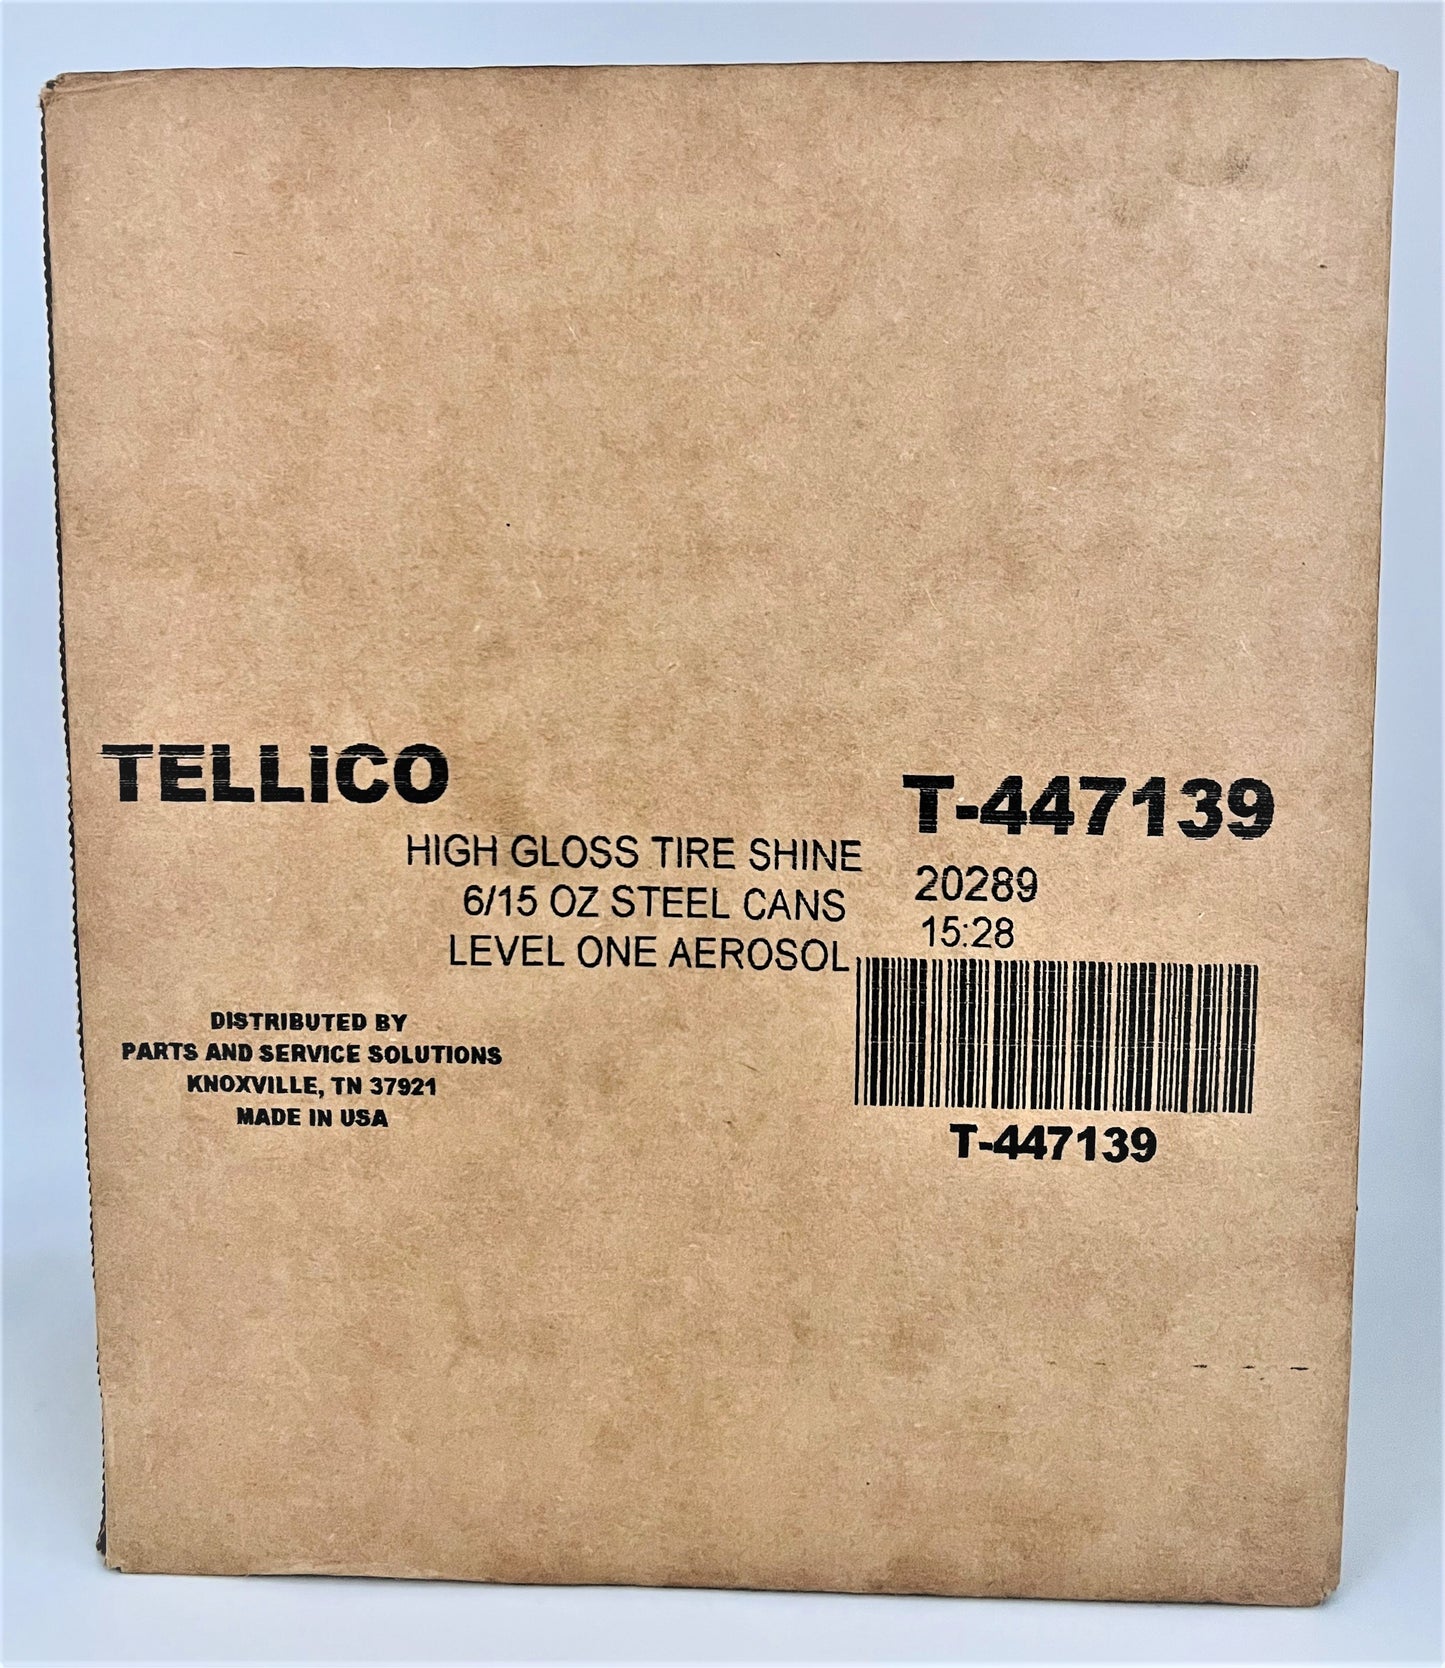 Tellico Tire Shine 15oz - 6 Can Case